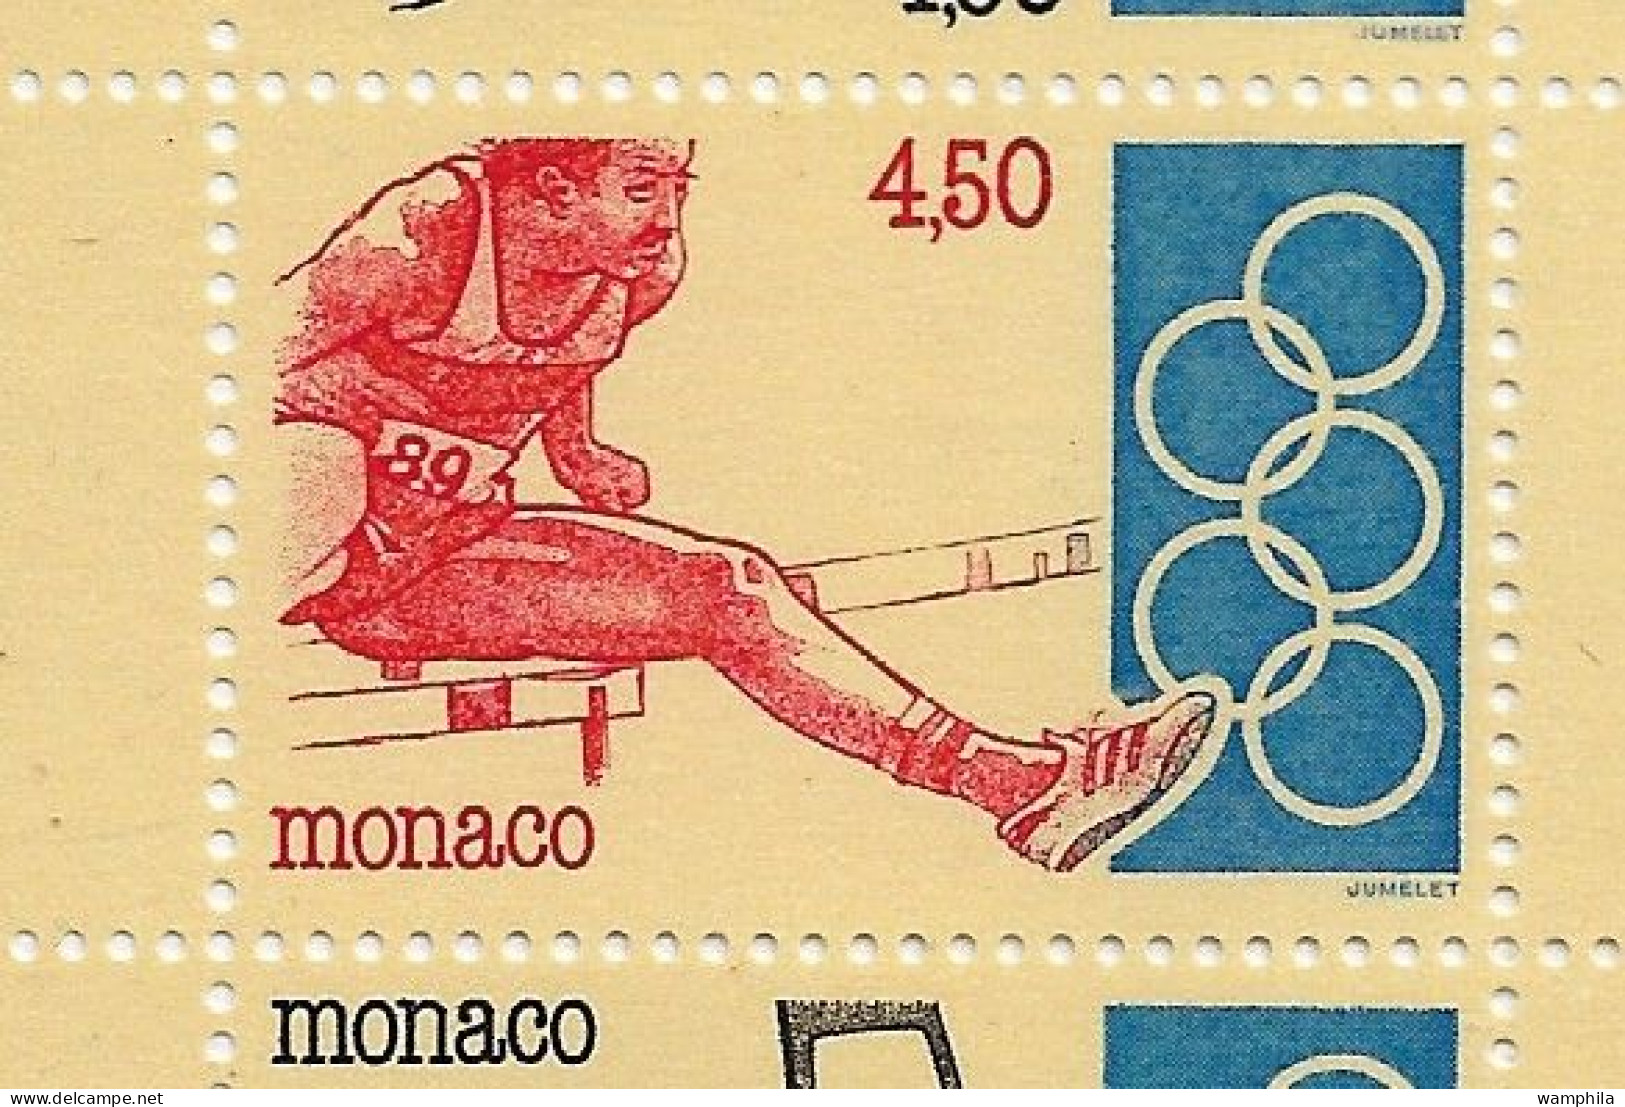 Monaco 1993. Carnet N°11, J.O .Anneaux, judo, escrime, haies, tir à l'arc, haltérophilie.